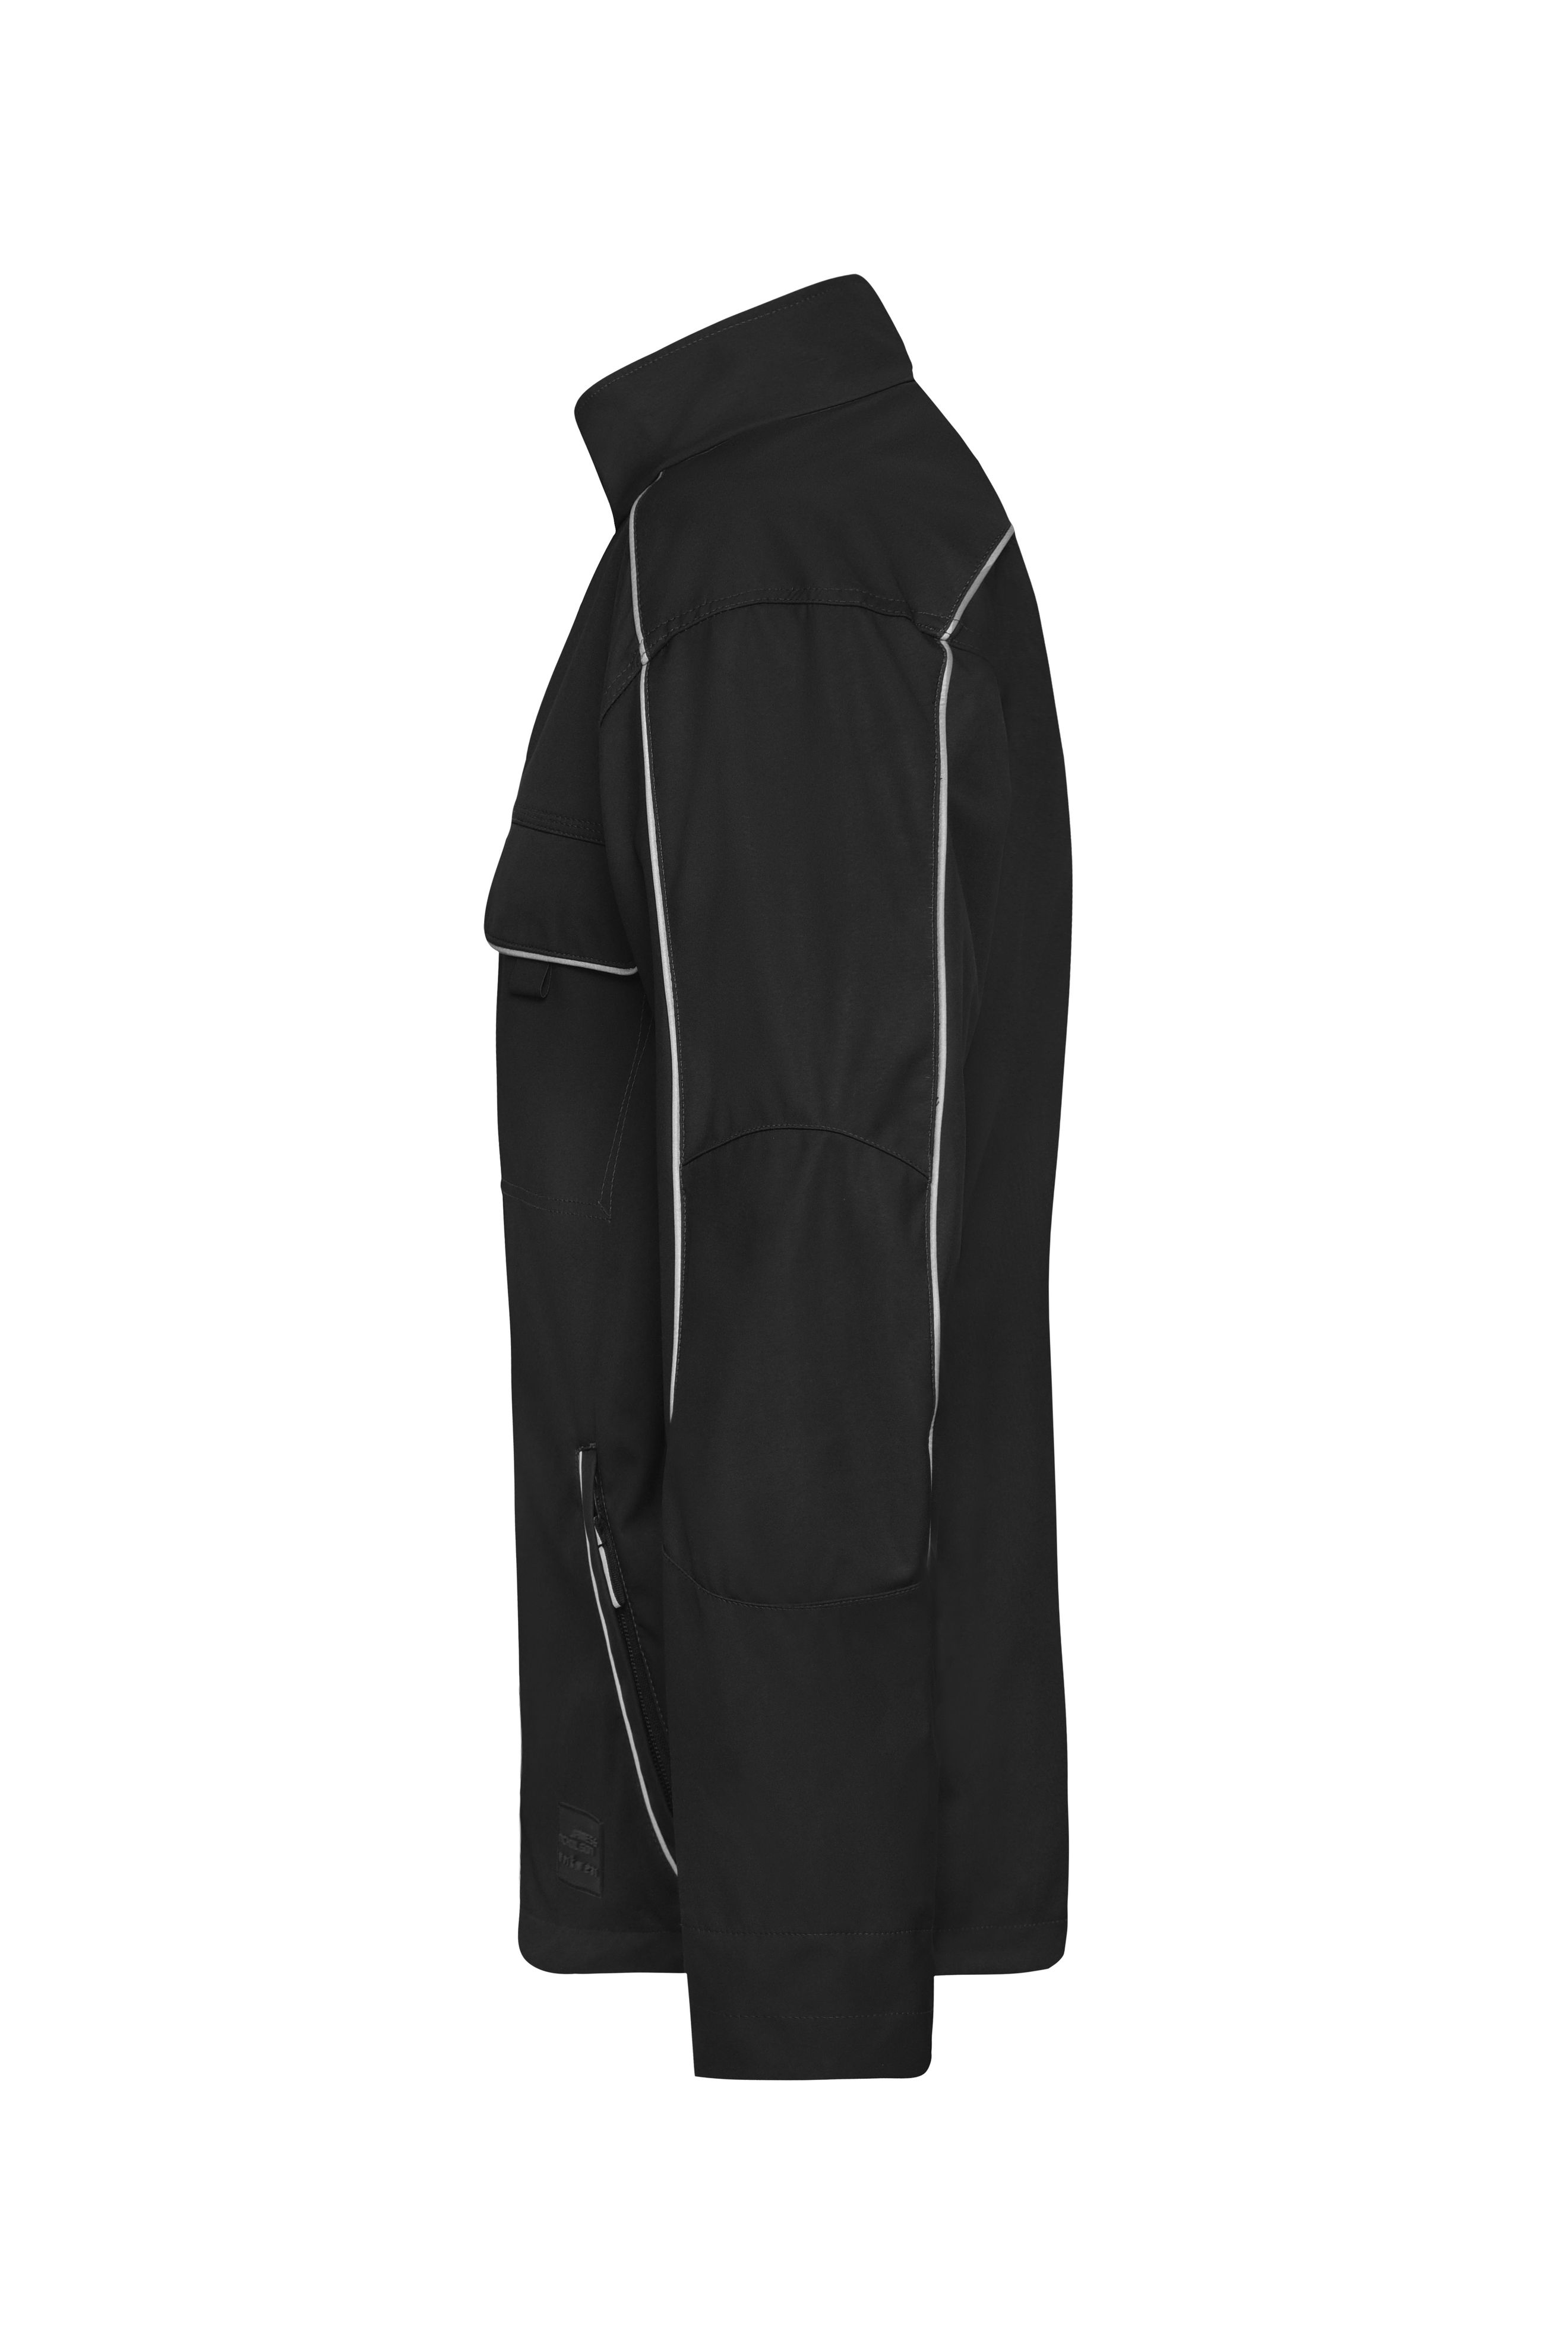 Workwear Softshell Light Jacket - SOLID - JN882 Professionelle, leichte Softshelljacke im cleanen Look mit hochwertigen Details